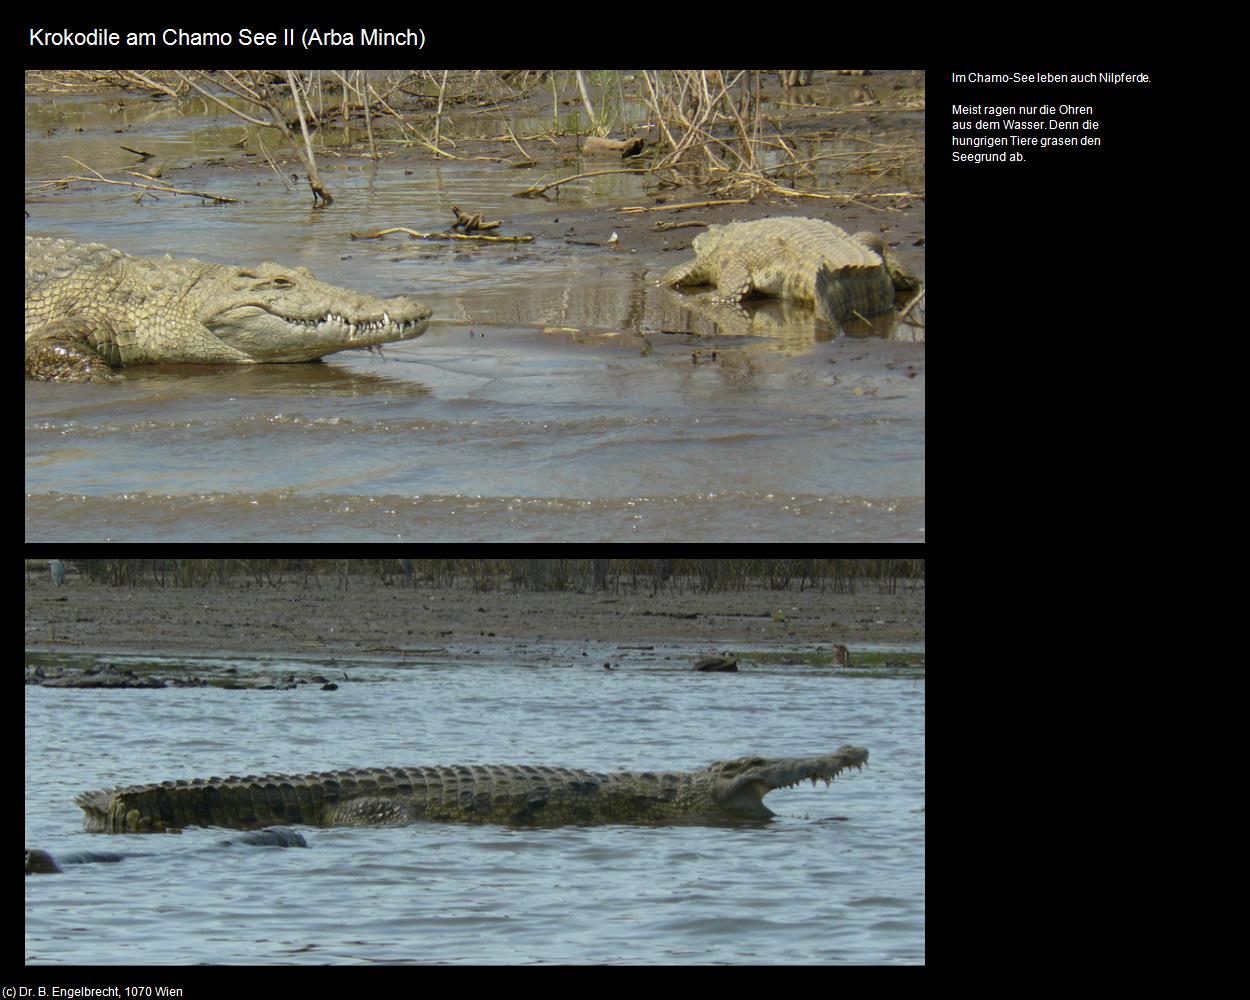 Krokodile am Chamo See II (Arba Minch) in Äthiopien